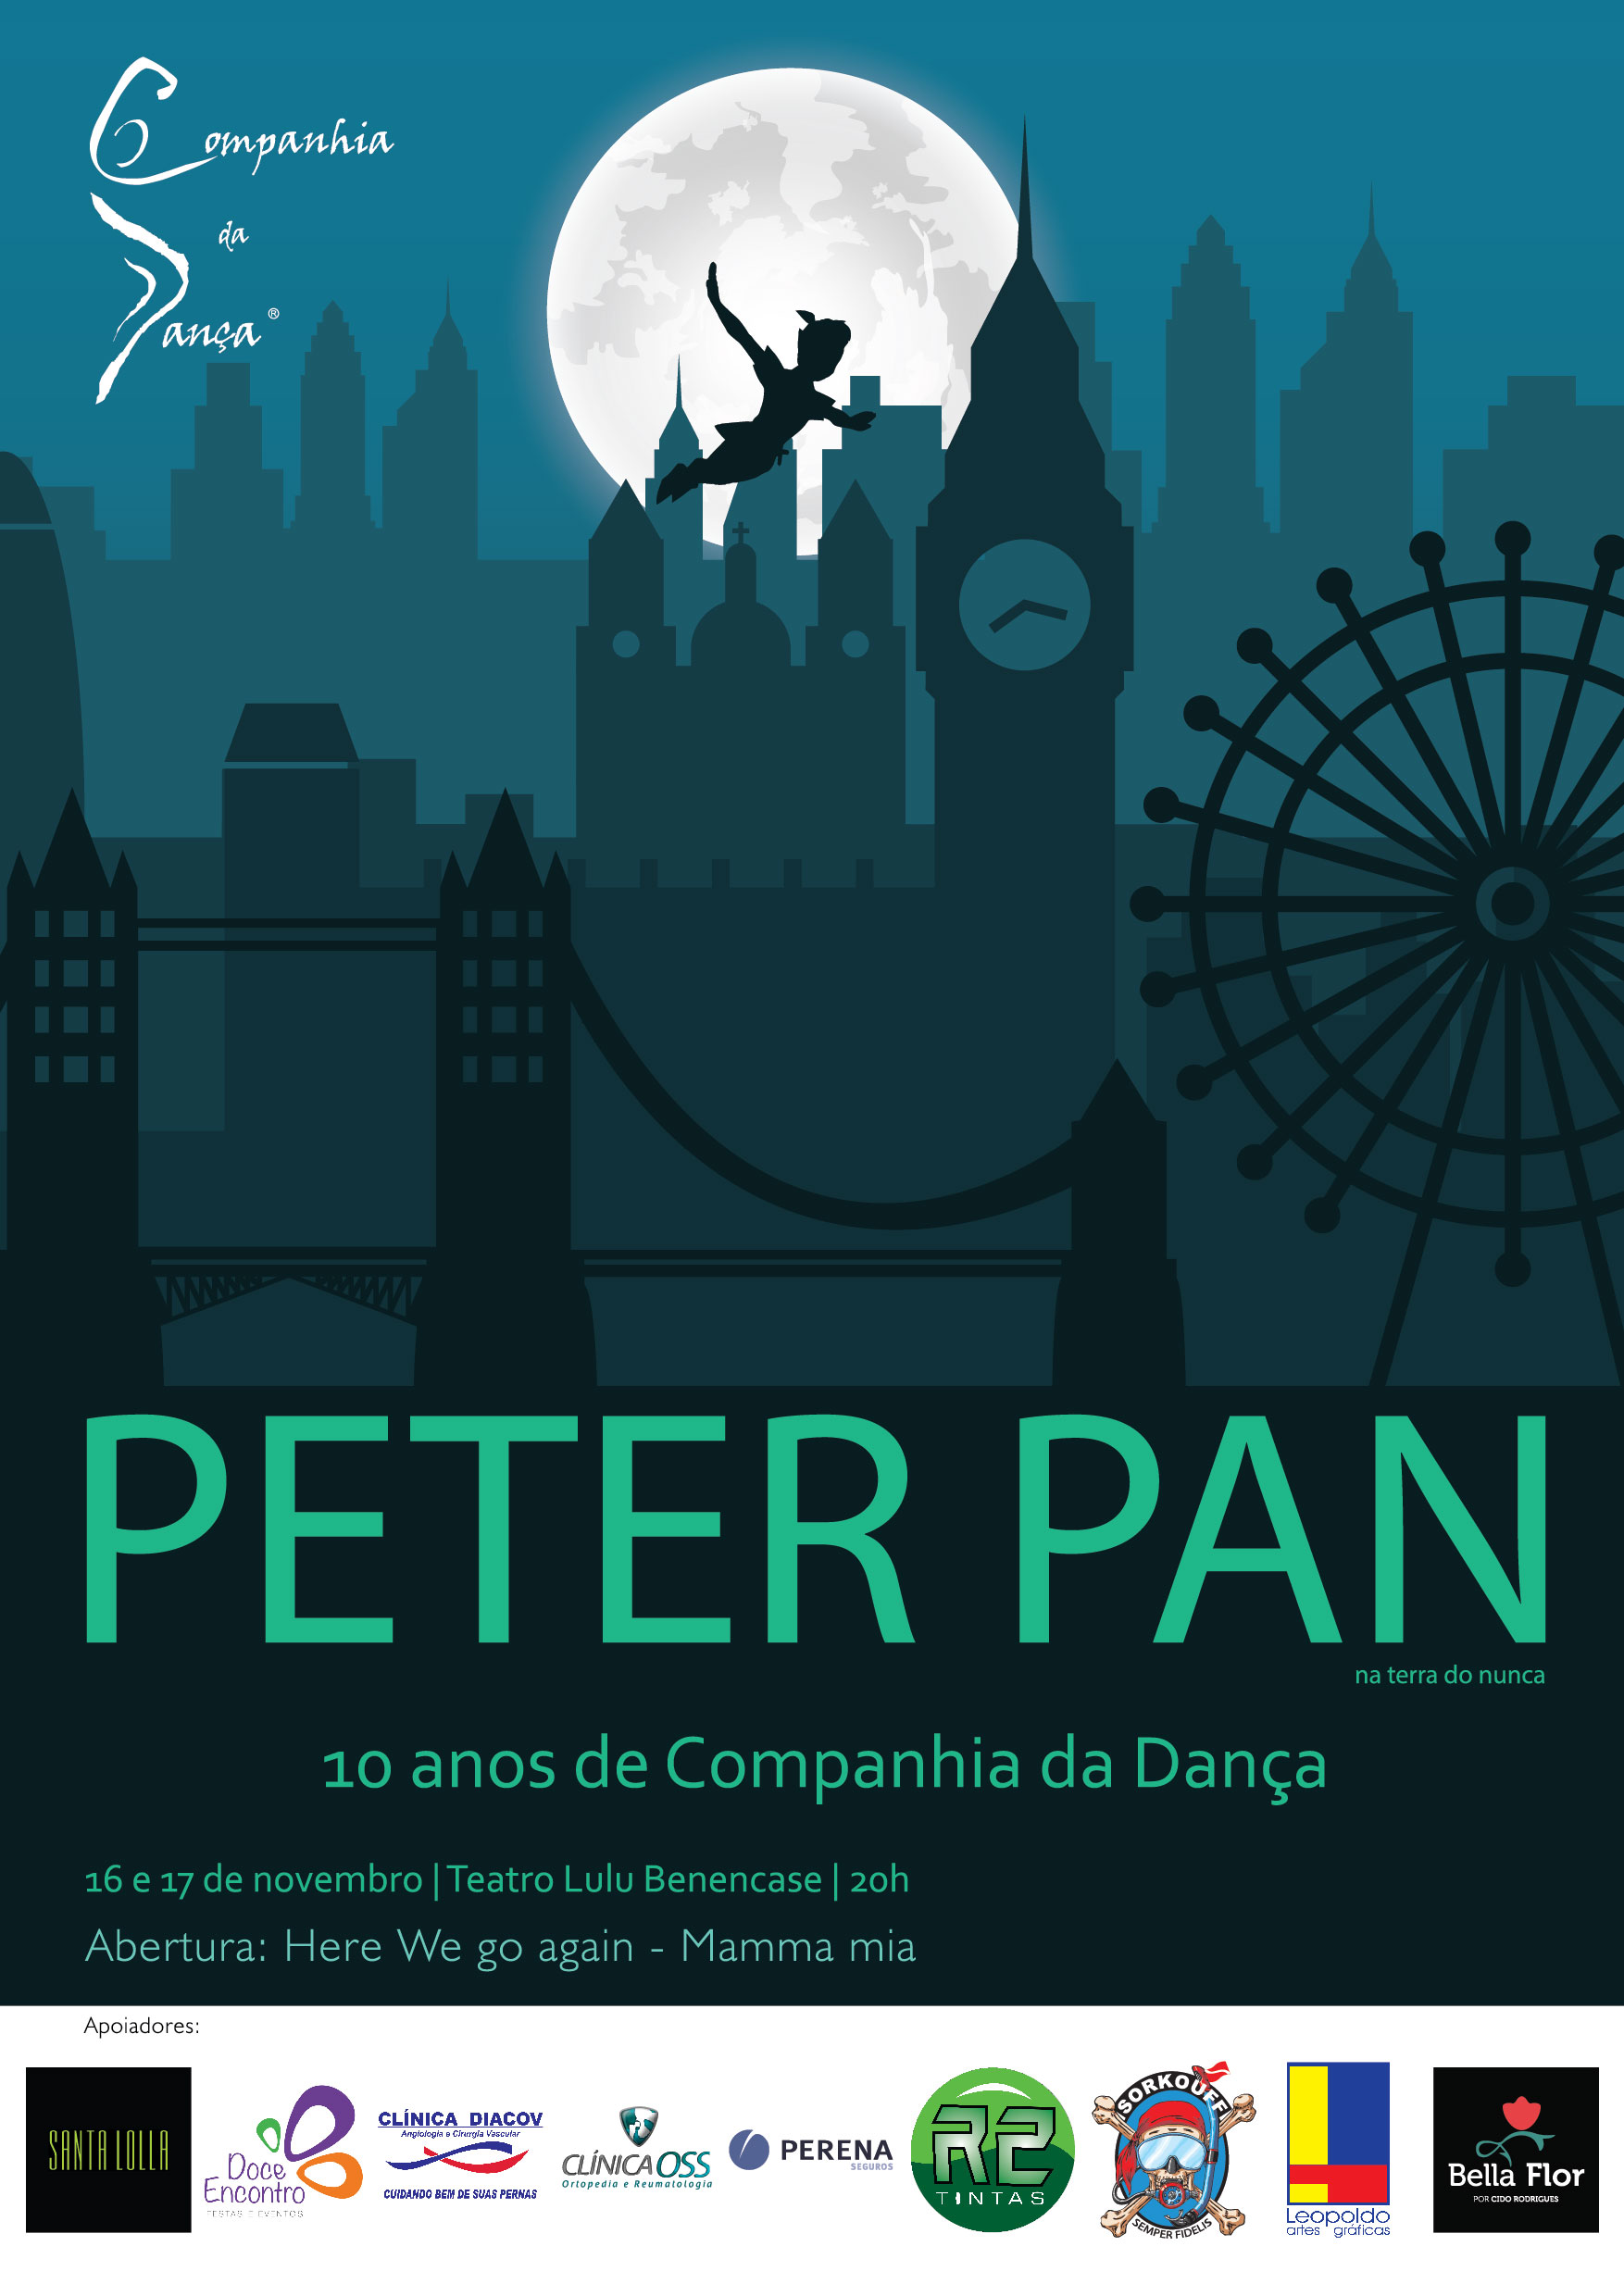 <p>Peter Pan_Companhia da Dança</p>
